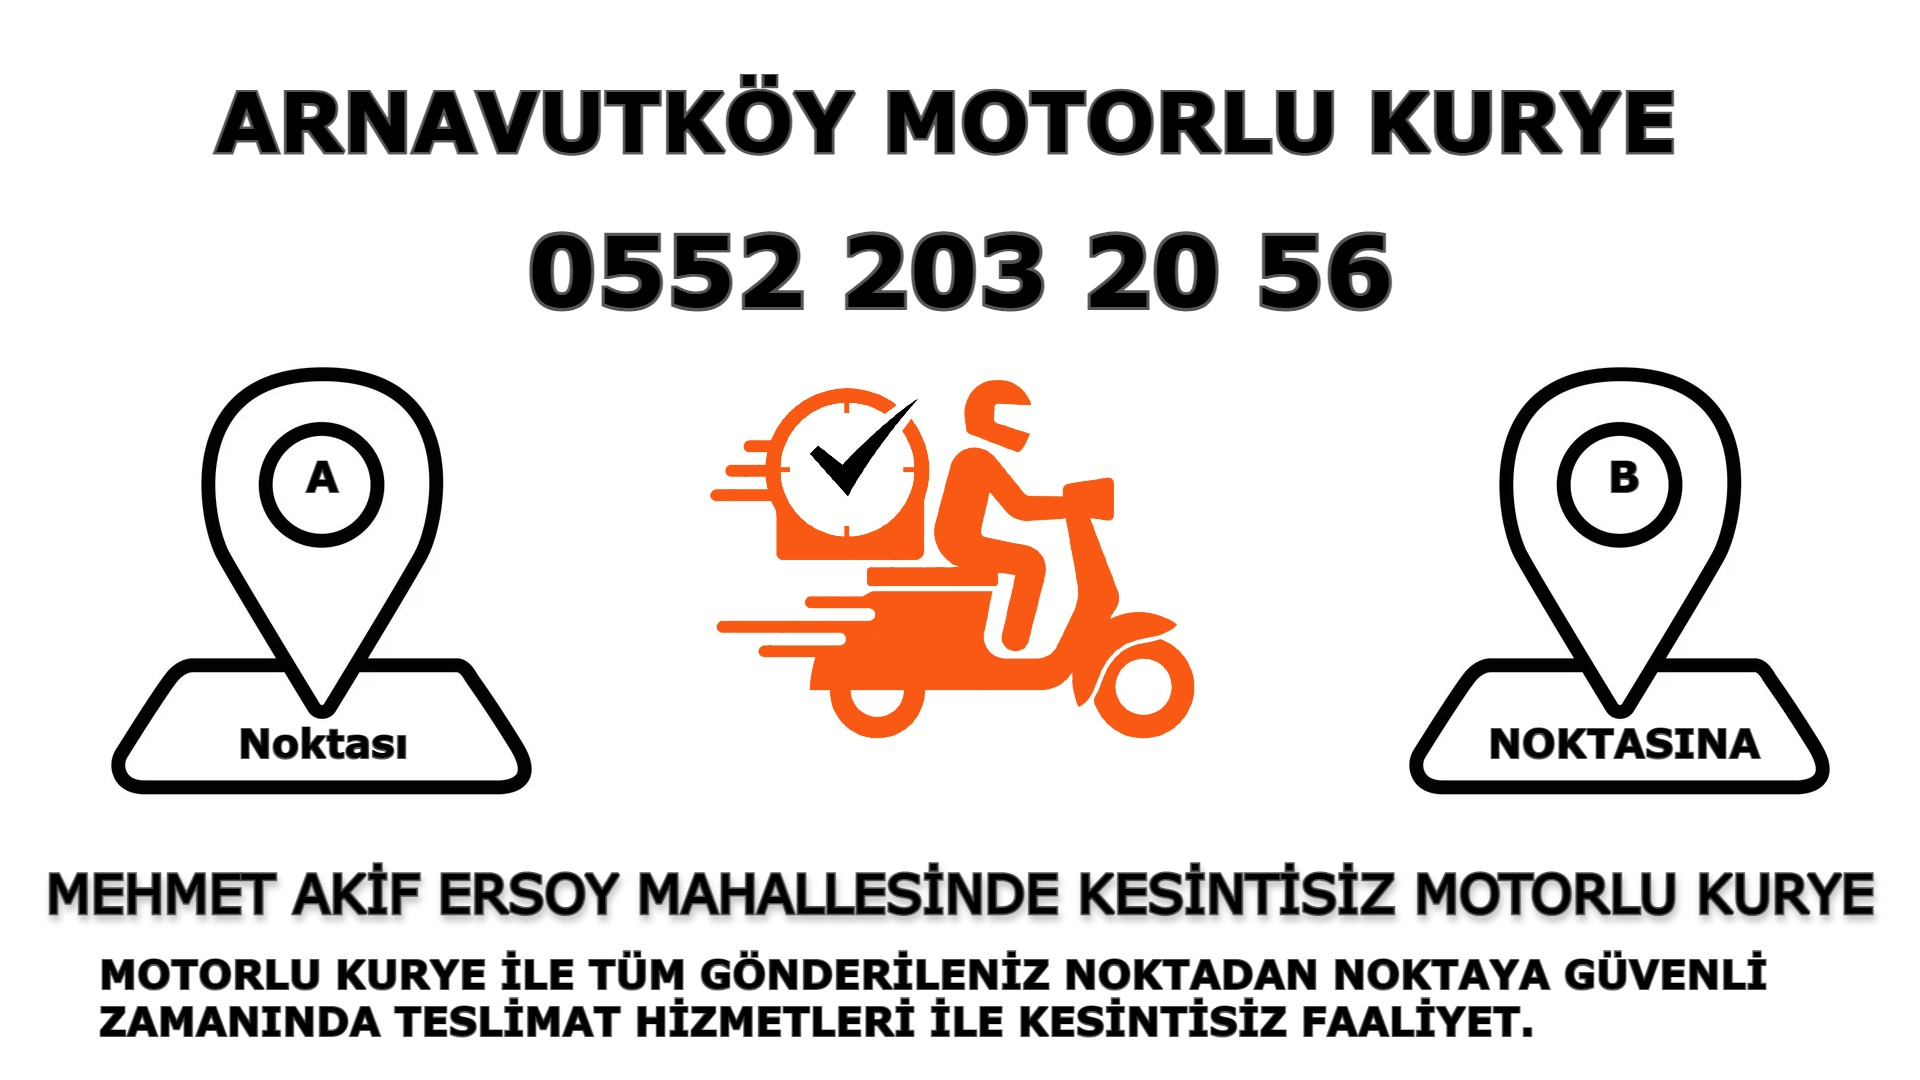 Mehmet Akif Ersoy Acil Motorlu Kurye |7/24 | 0552 203 20 56